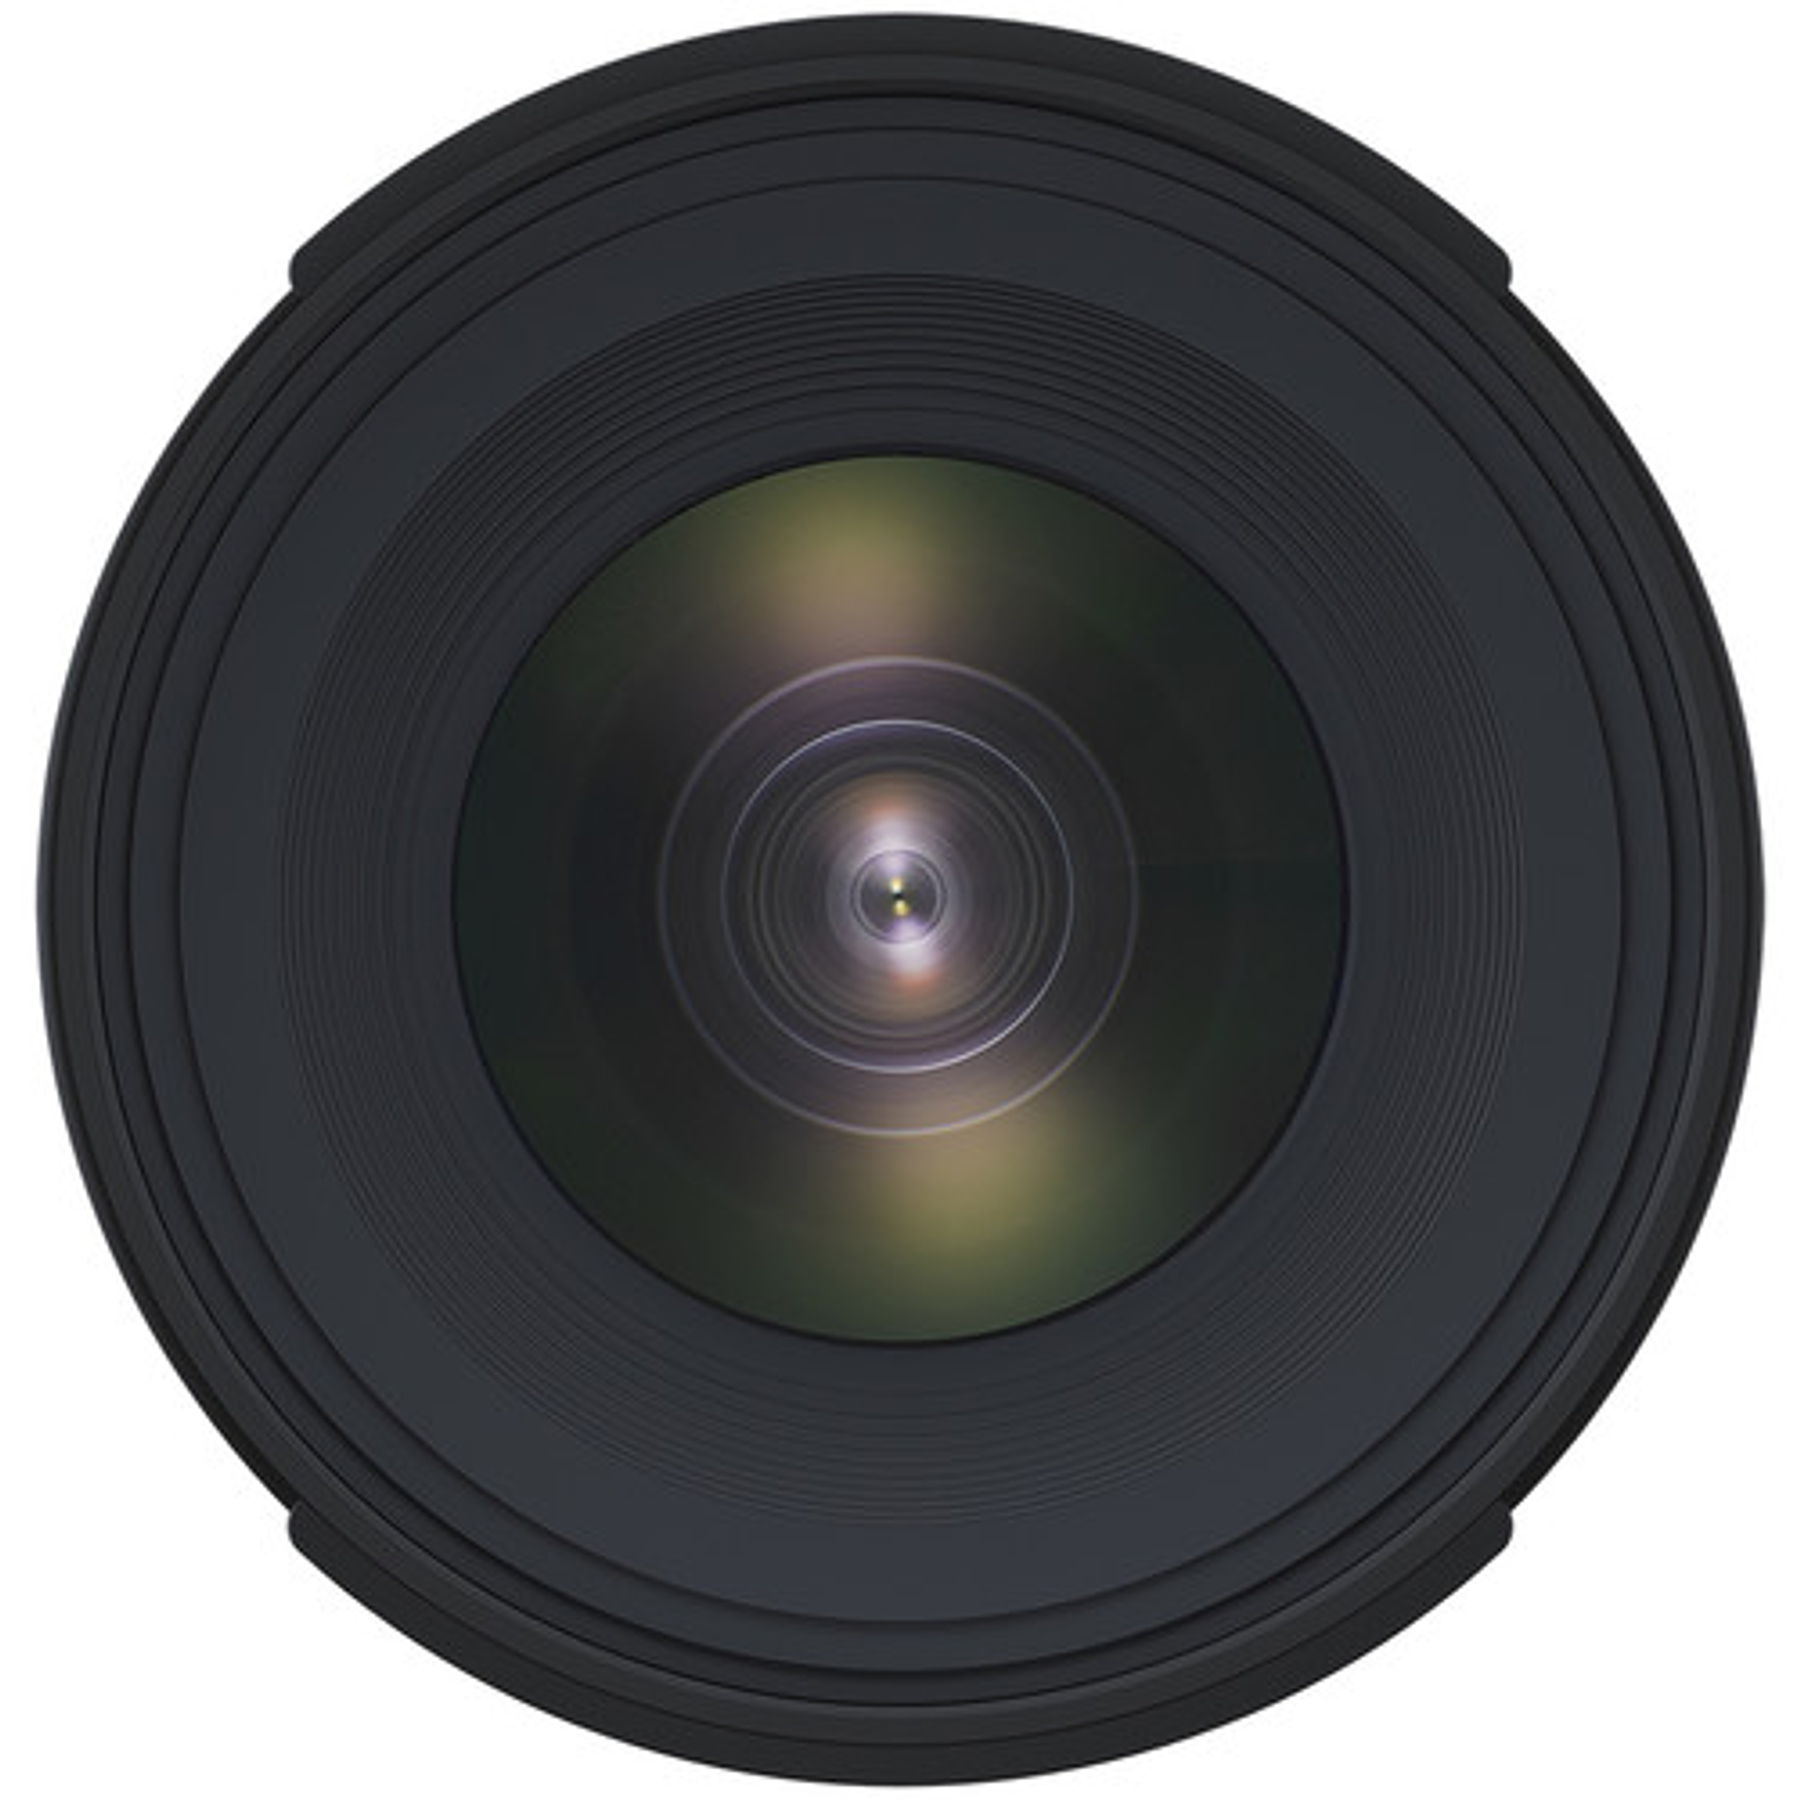 Tamron Lente 10-24mm F/3.5-4.5 Di II VC HLD para Canon/Nikon